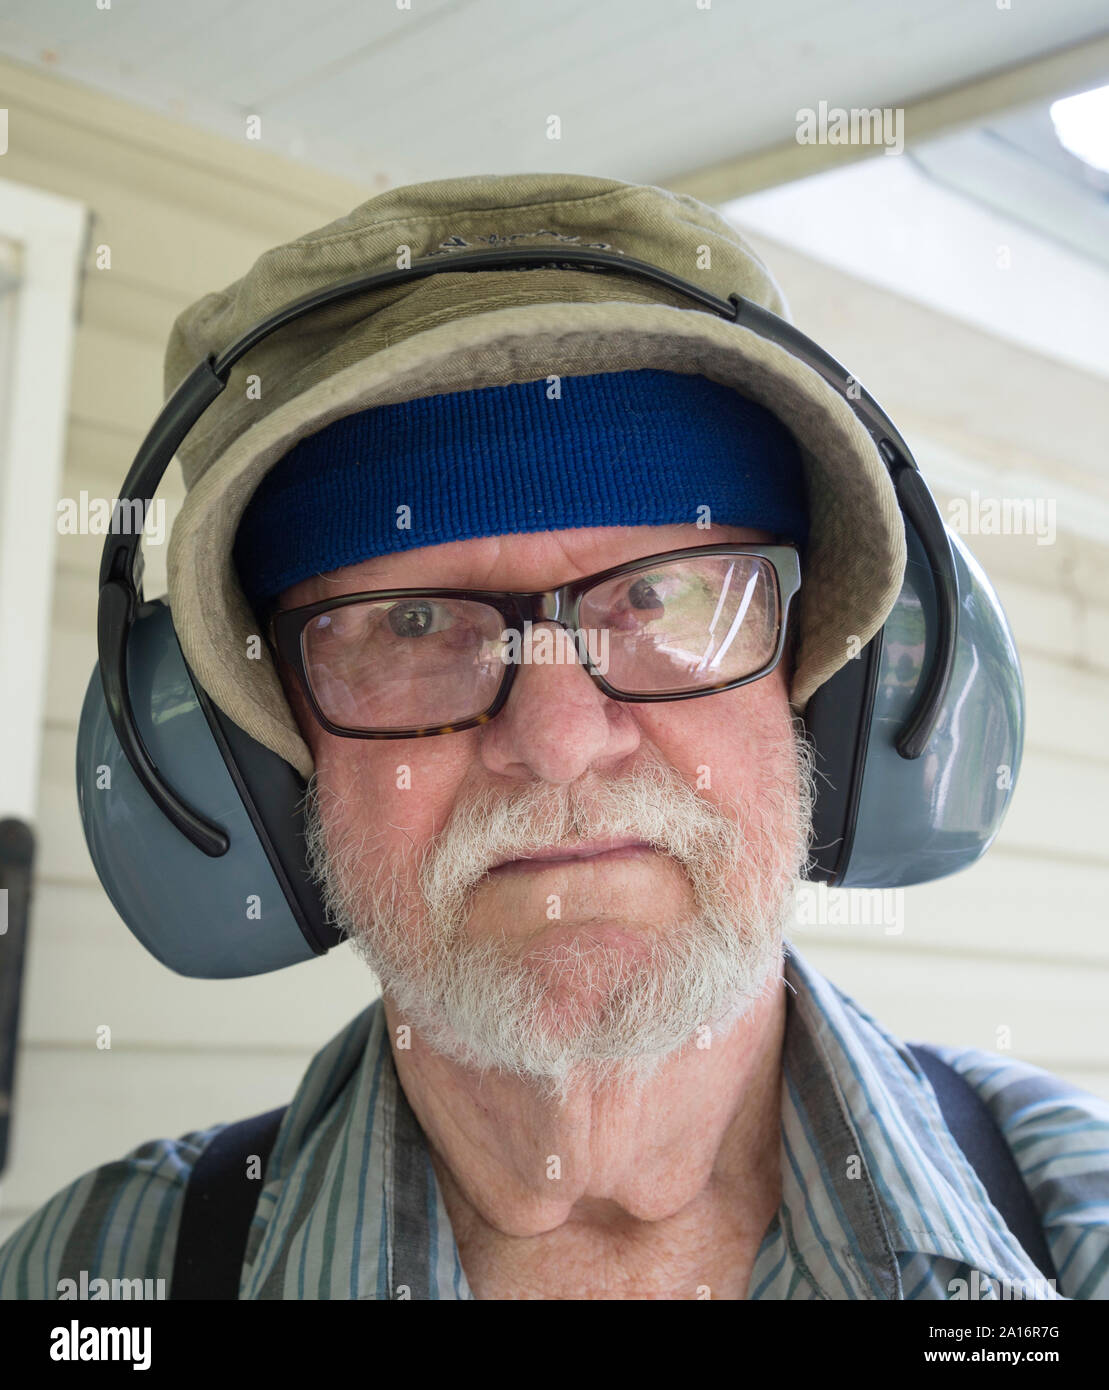 Vieil homme prêt à tondre avec son casque antibruit sur. Banque D'Images